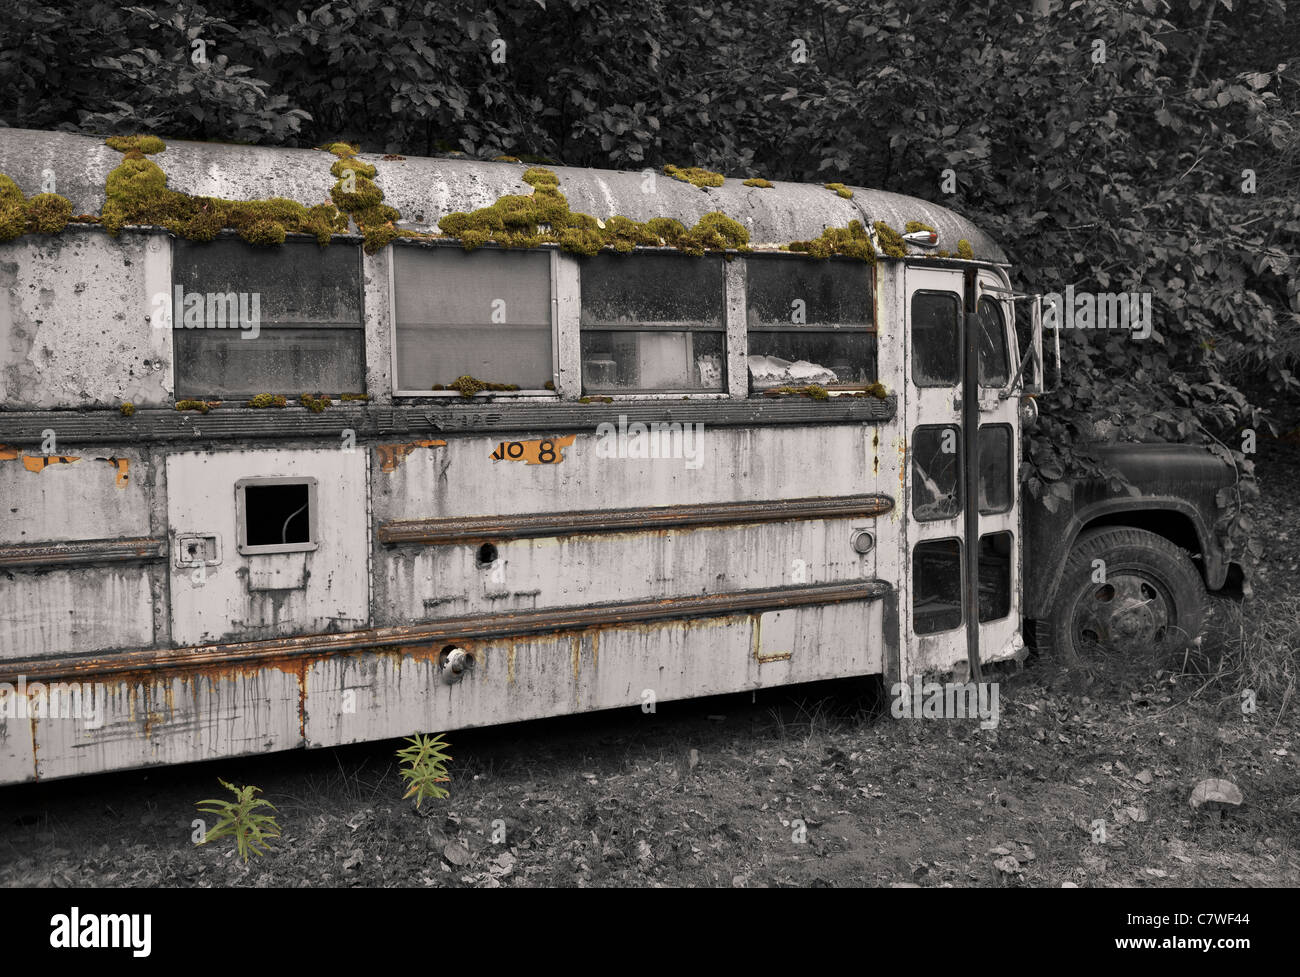 ALASKA, USA - abandoned bus Stock Photo